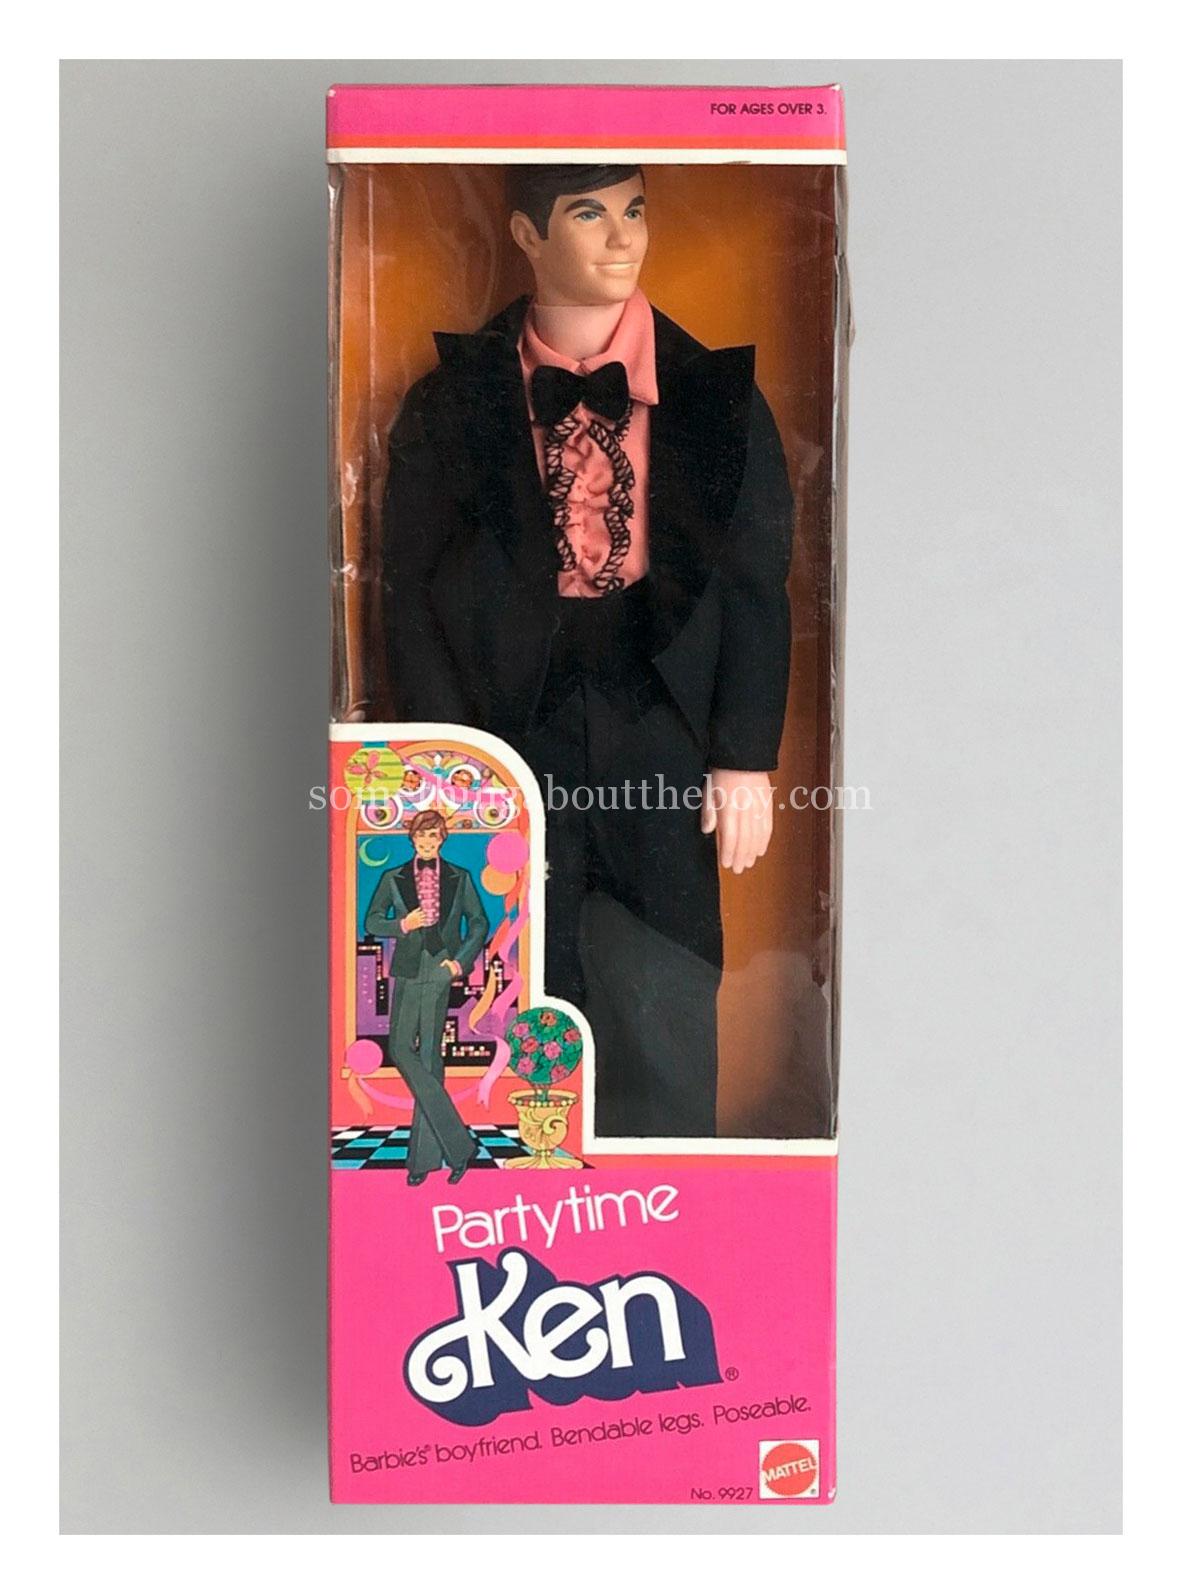 1977 #9927 Partytime Ken (English version) in original packaging